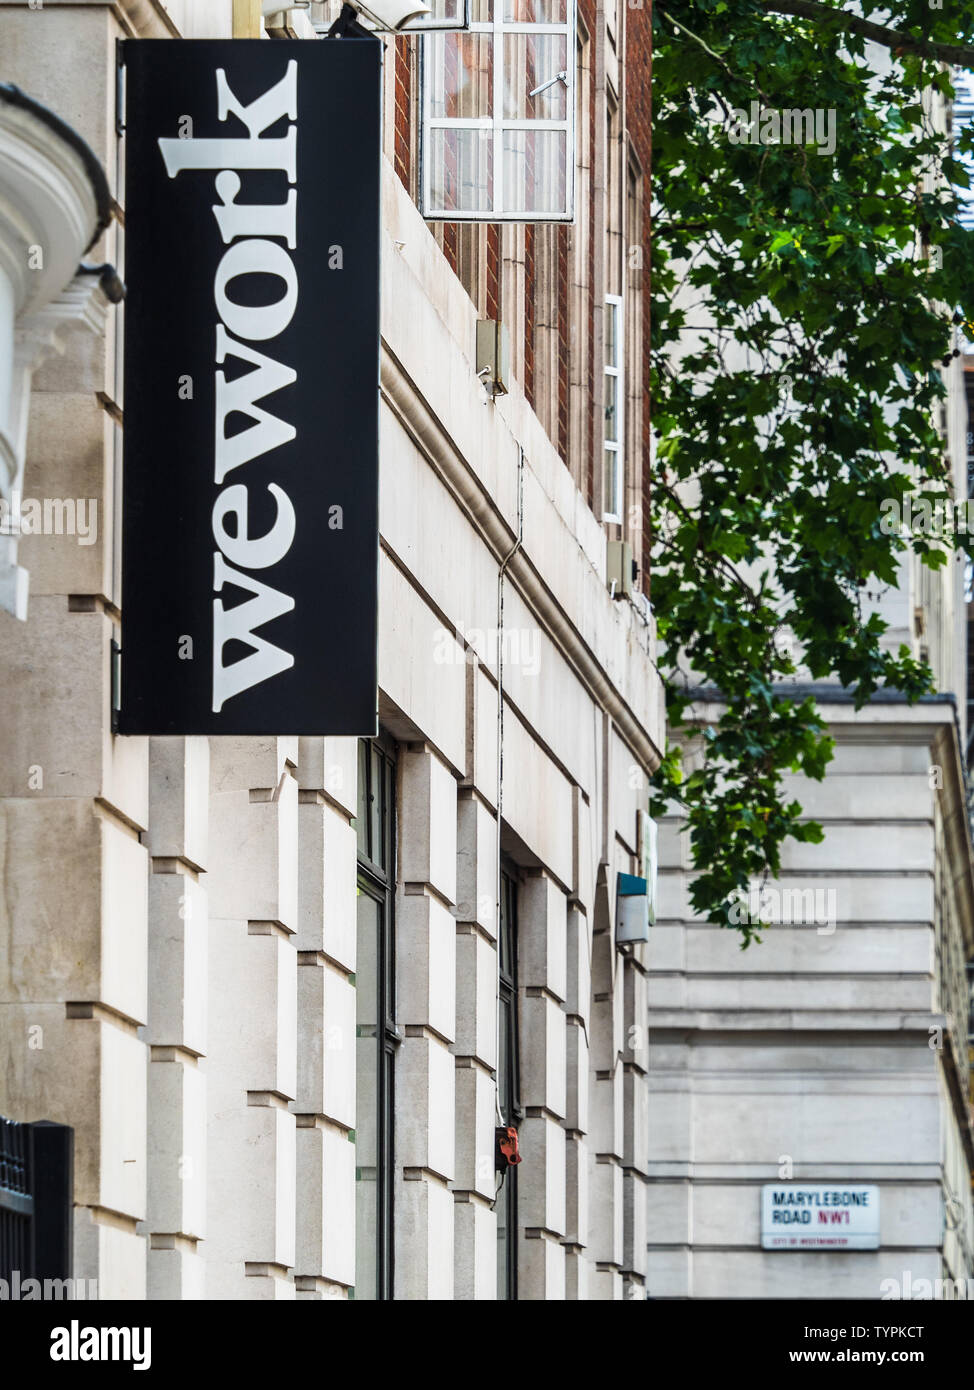 WeWork WeWork Marylebone Londres espaces Bureau partagé - Chambre nord-ouest dans le centre de Londres Marylebone Road Banque D'Images